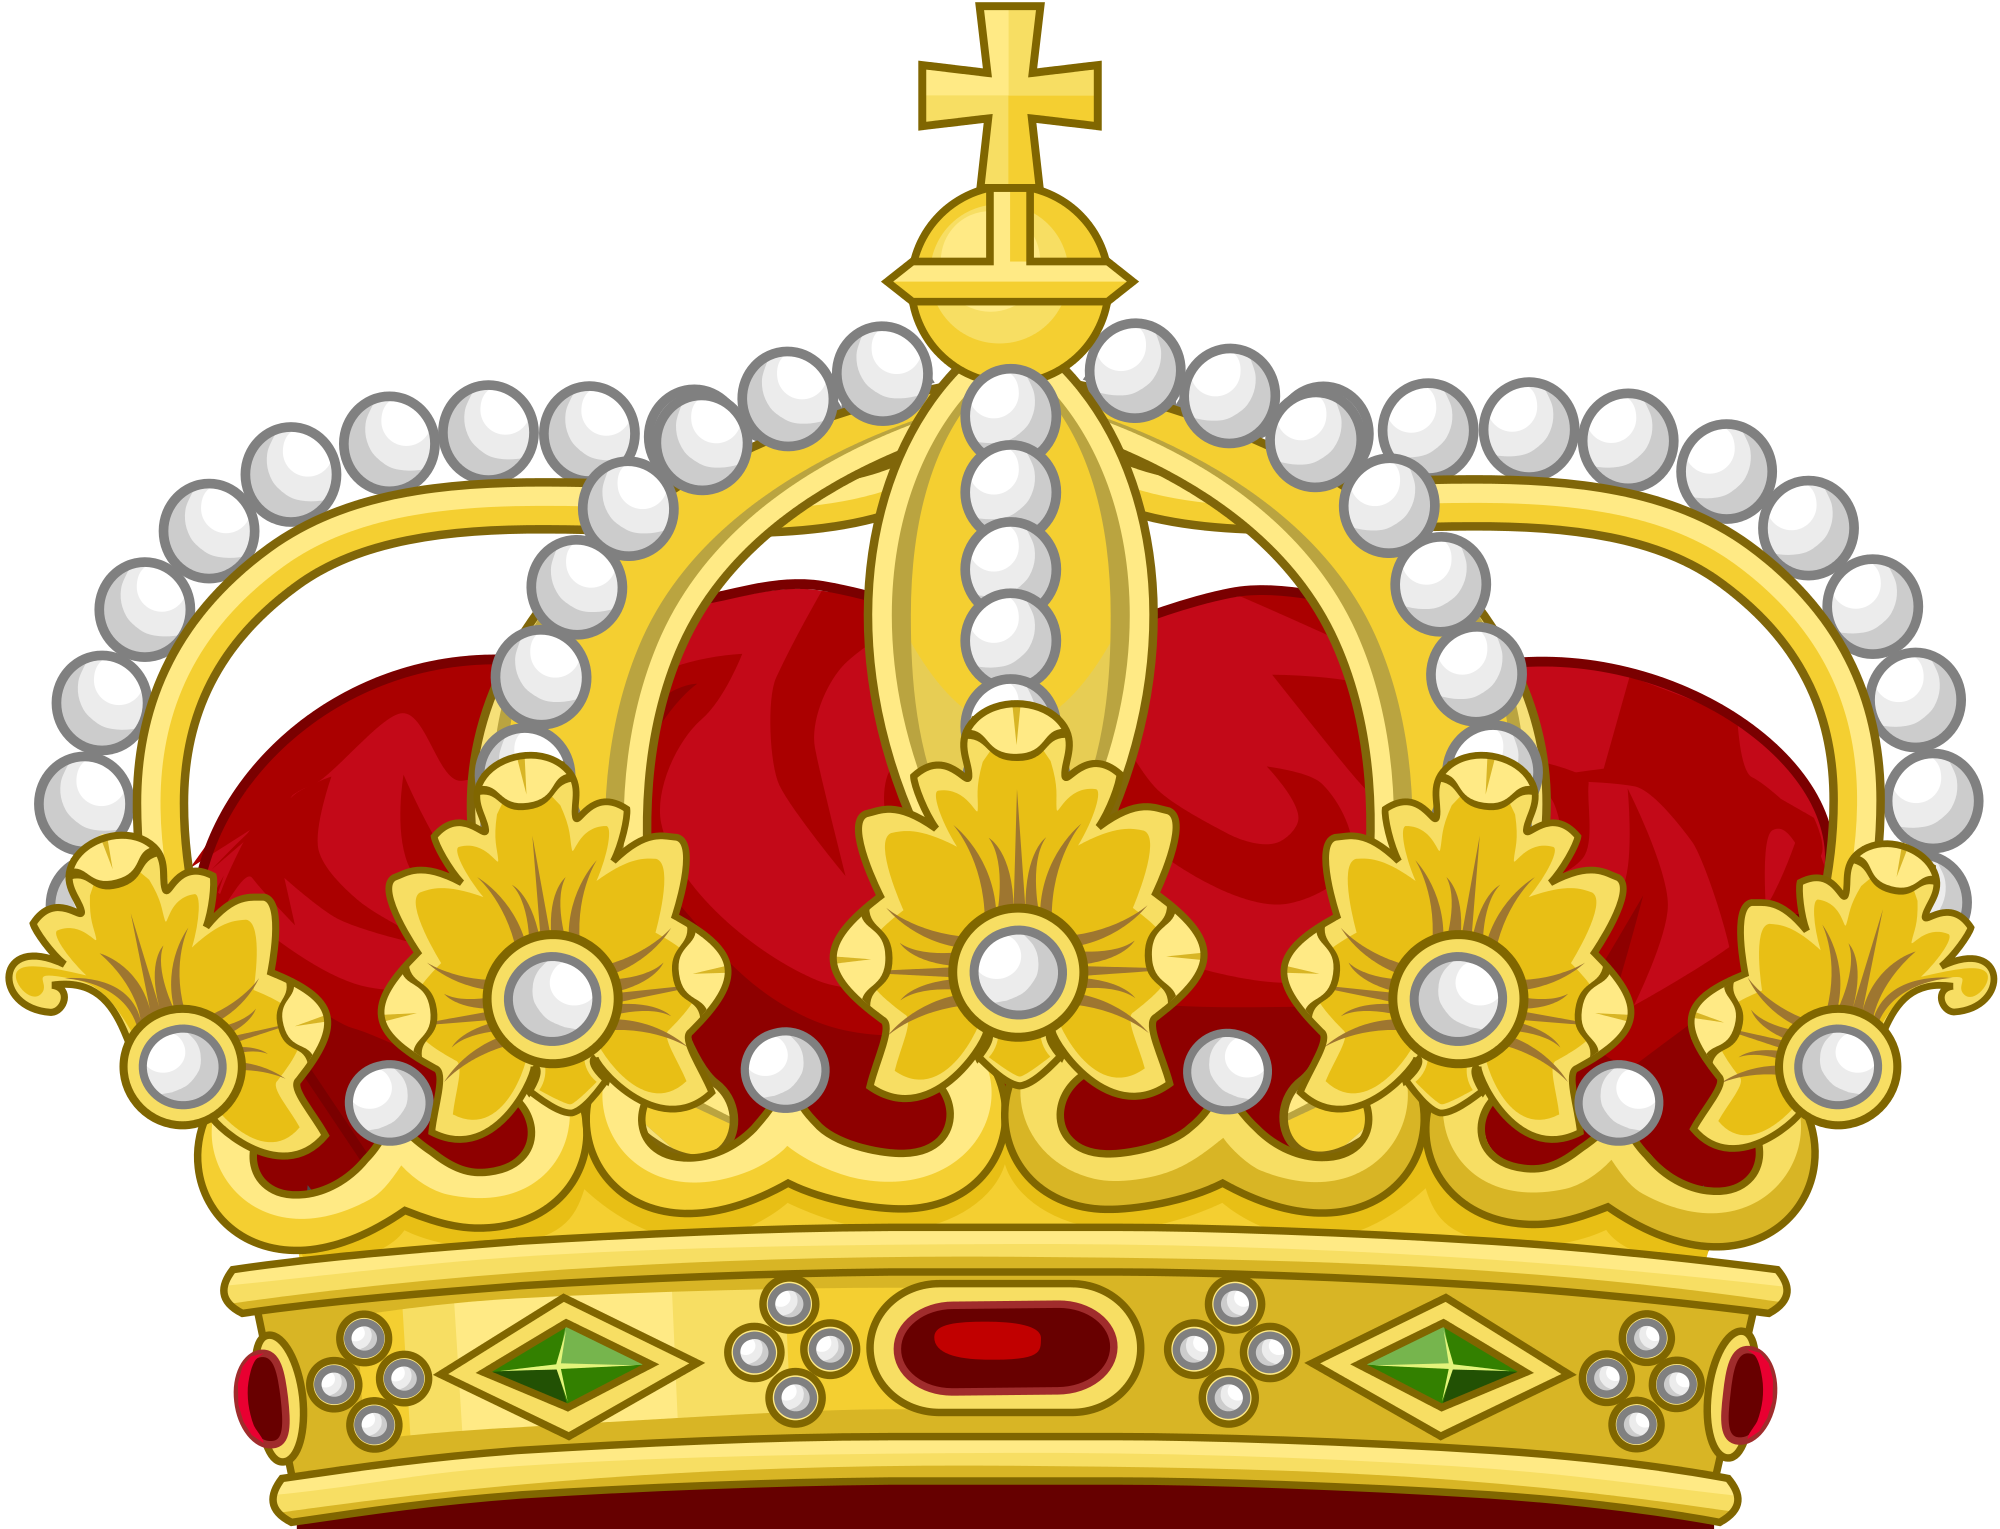 Emoji Sticker Crown iPhone Symbol - king png download - 1024*1024